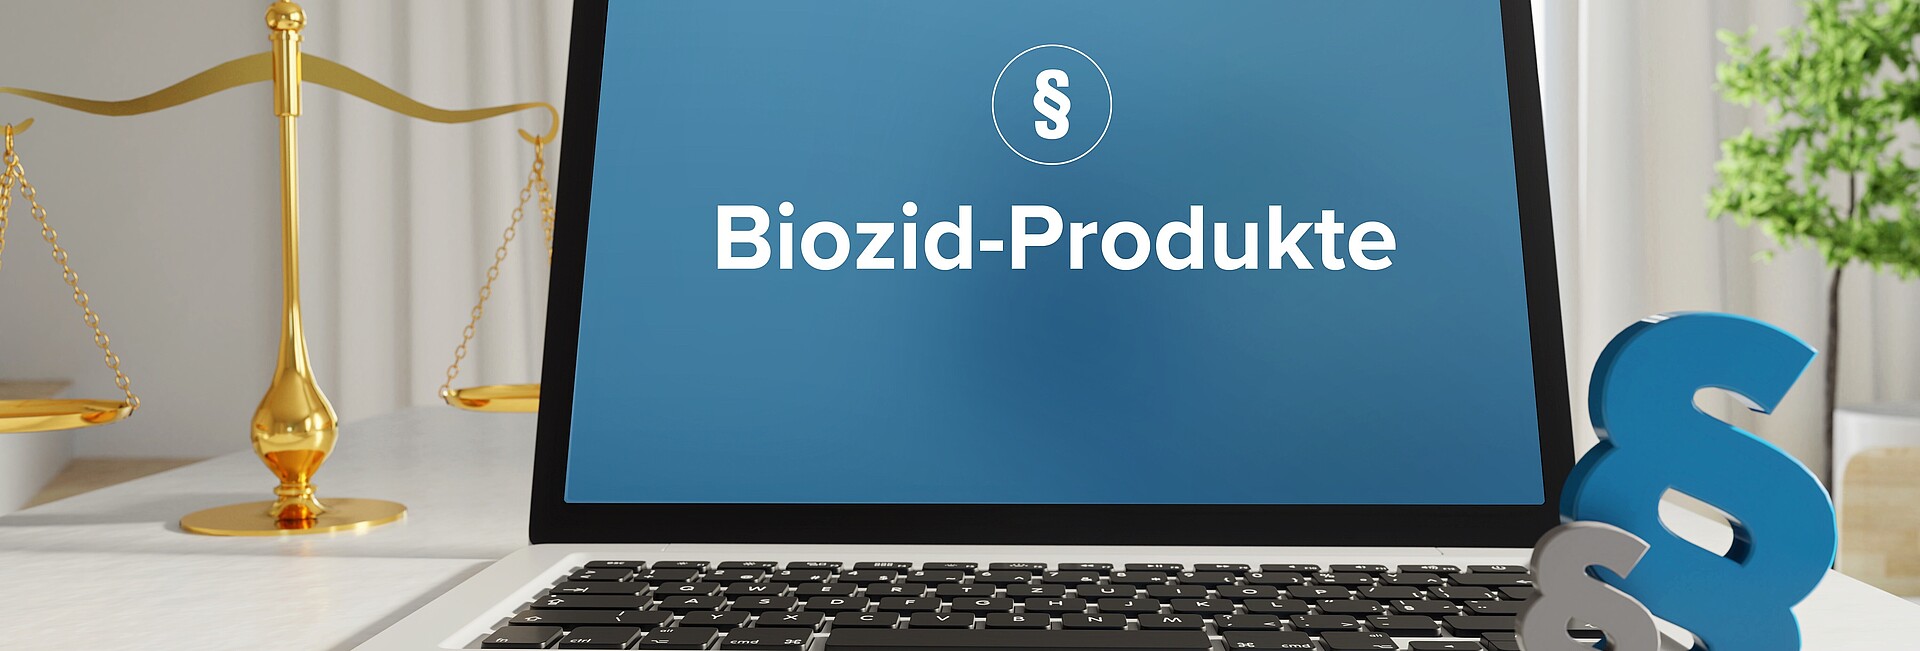 ter, auf dem Bildschirm ist das Wort Biozid-Produkte zu lesen